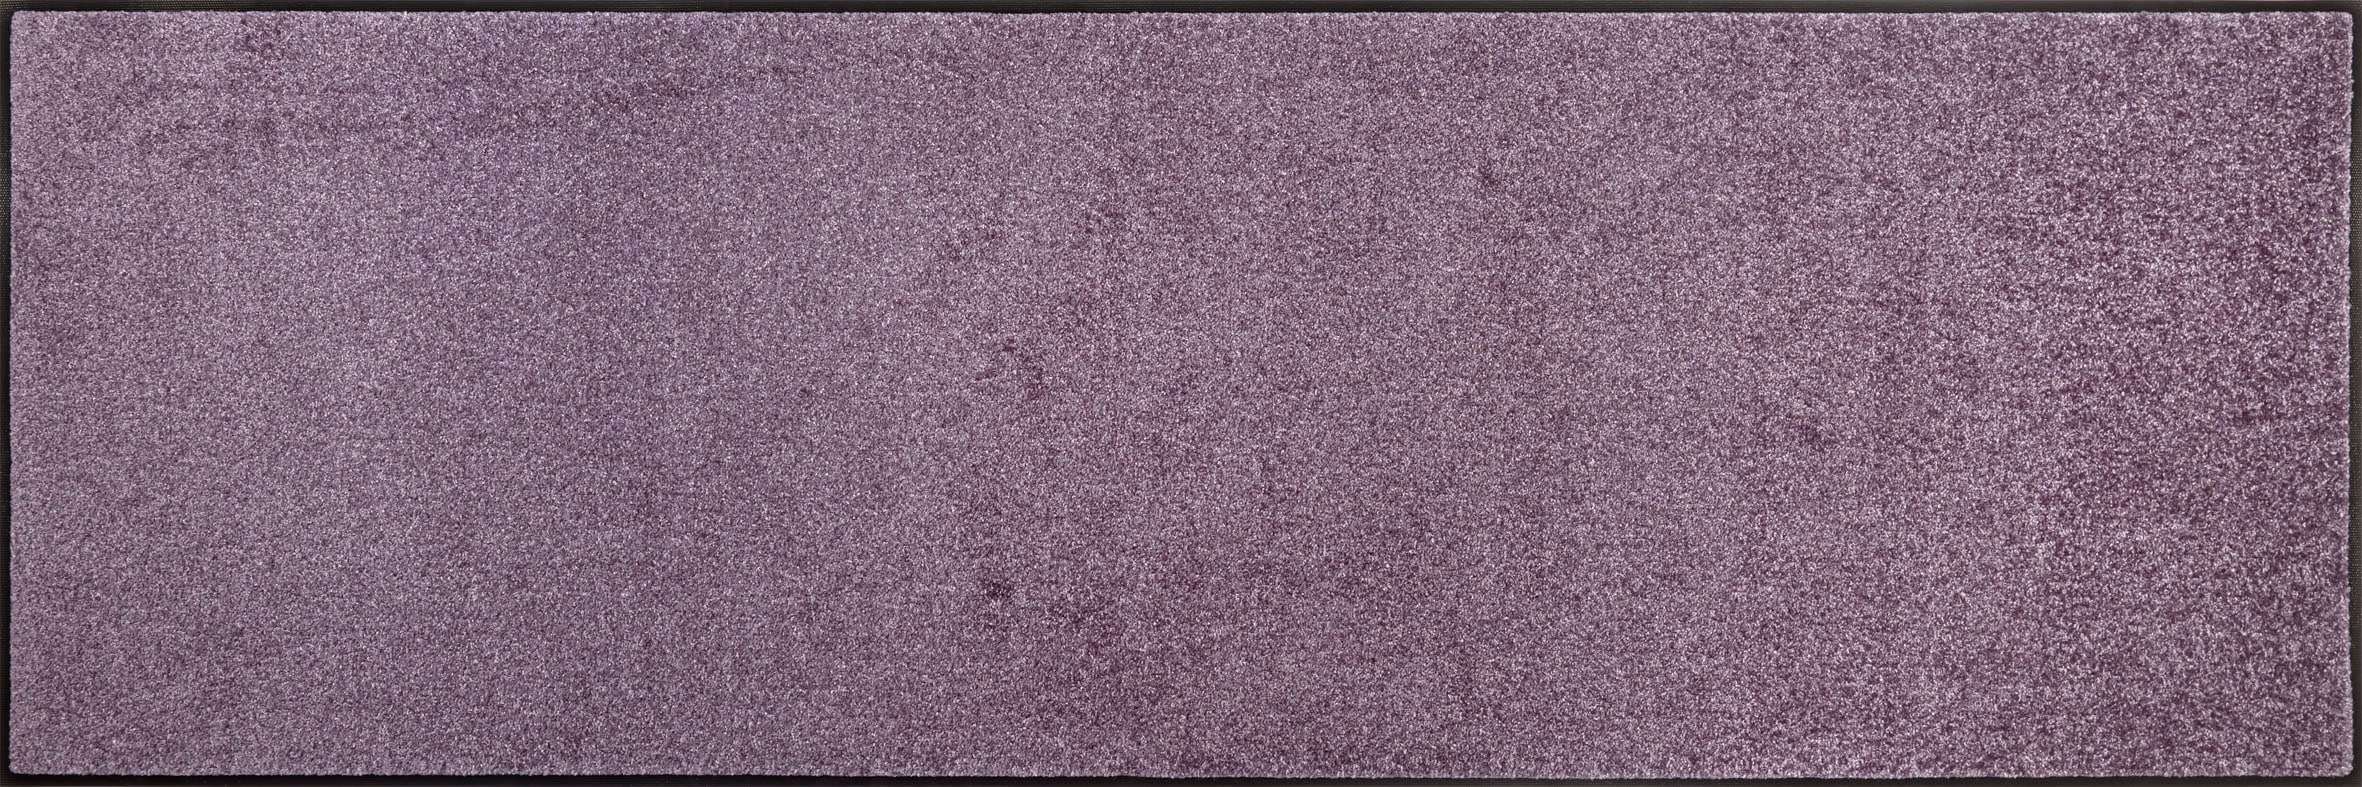 wash+dry Fußmatte, Lavender Mist 60x180cm, innen, waschbar, lila